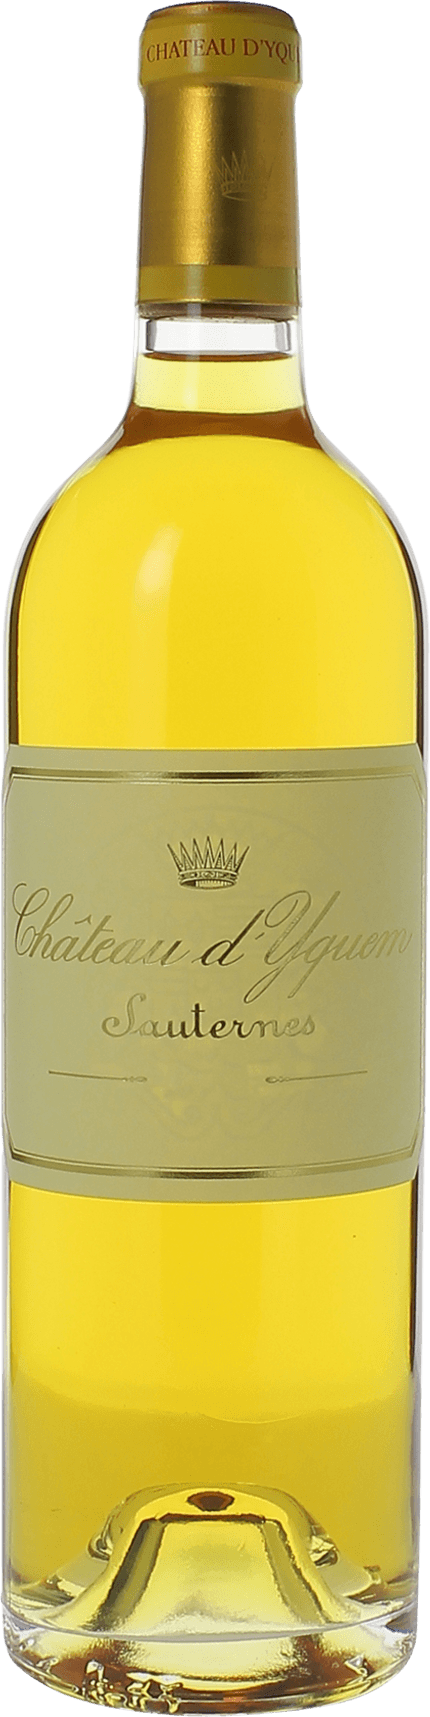 Yquem 1989 1er Cru Suprieur Sauternes, Bordeaux blanc